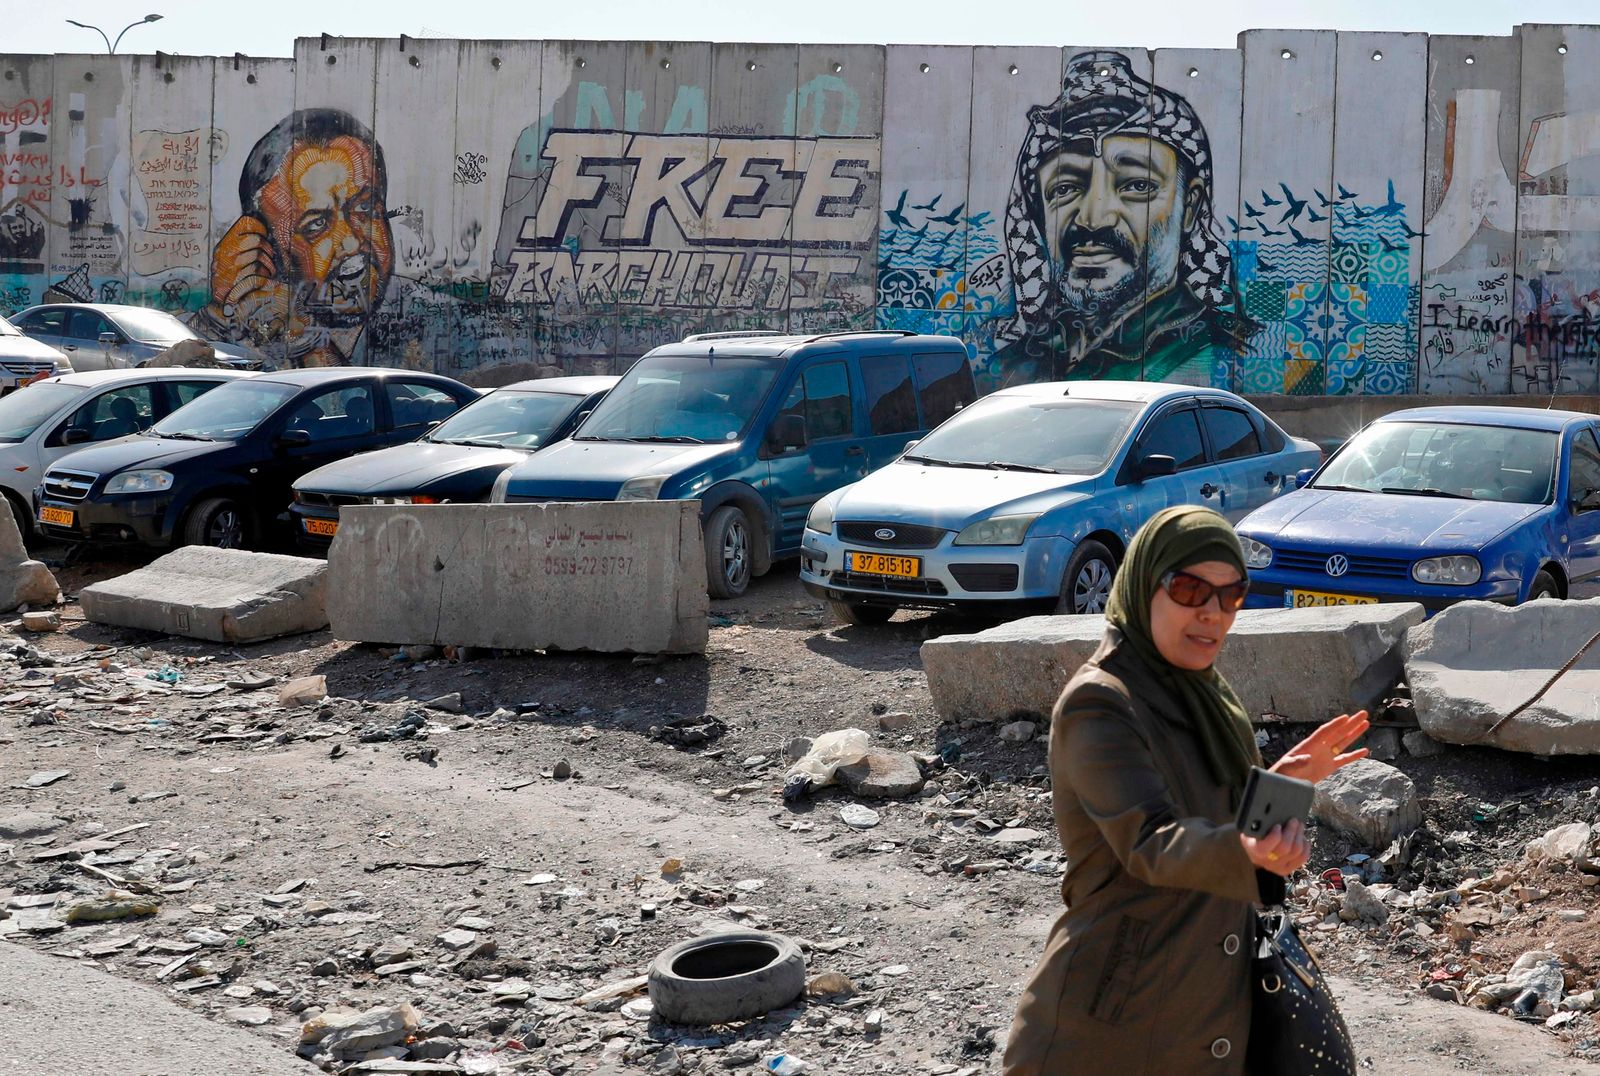 امرأة تسير أمام لوحة جدارية تحمل صورة عملاقة للزعيم الفلسطيني الراحل ياسر عرفات (إلى اليمين) على جزء من الجدار العازل الإسرائيلي المثير للجدل عند حاجز قلنديا ، بين القدس ورام الله ، 11 نوفمبر ، 2019 بينما يحتفل الفلسطينيون بالذكرى الخامسة عشرة للوفاة رئيسهم السابق. - تظهر الصورة الأخرى زعيم فتح المسجون مروان البرغوثي (إلى اليسار). (تصوير أحمد غرابلي / وكالة الصحافة الفرنسية) - AFP